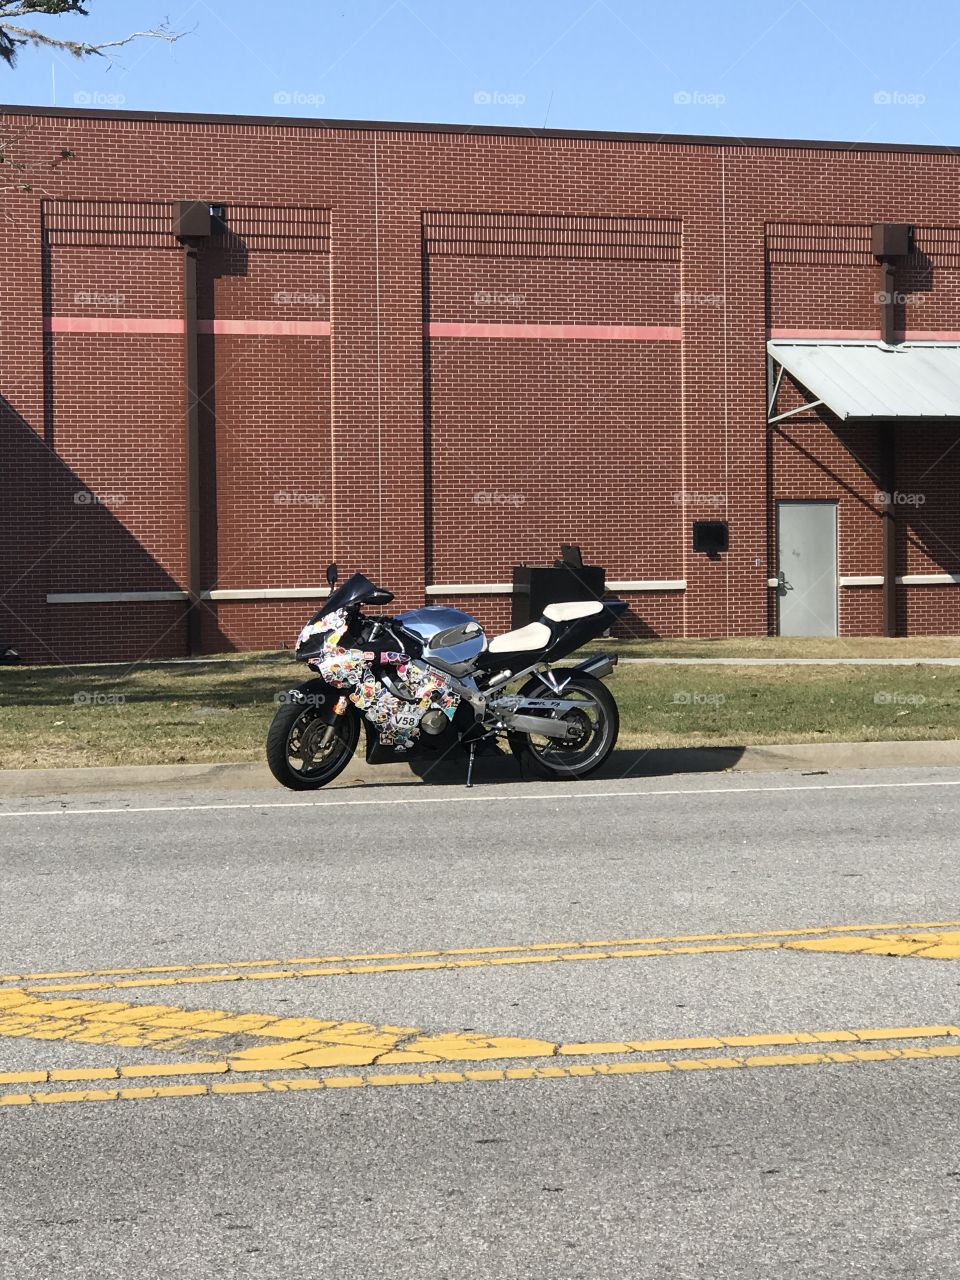 graffiti motorcycle